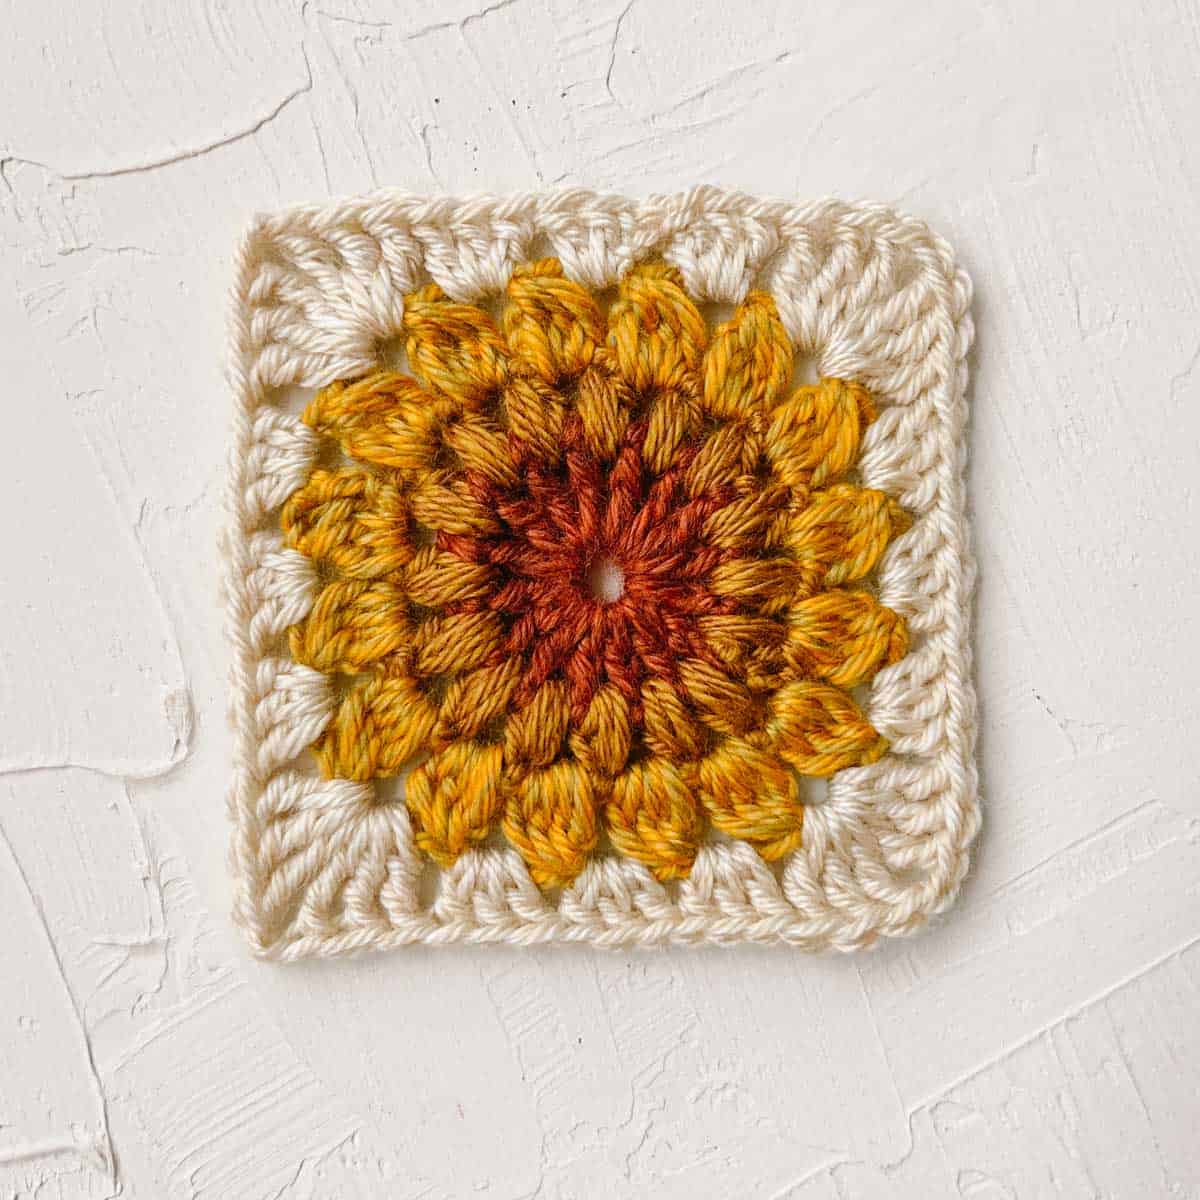 Crochet Sunburst (Sunflower) Granny Square Pattern + Tutorial